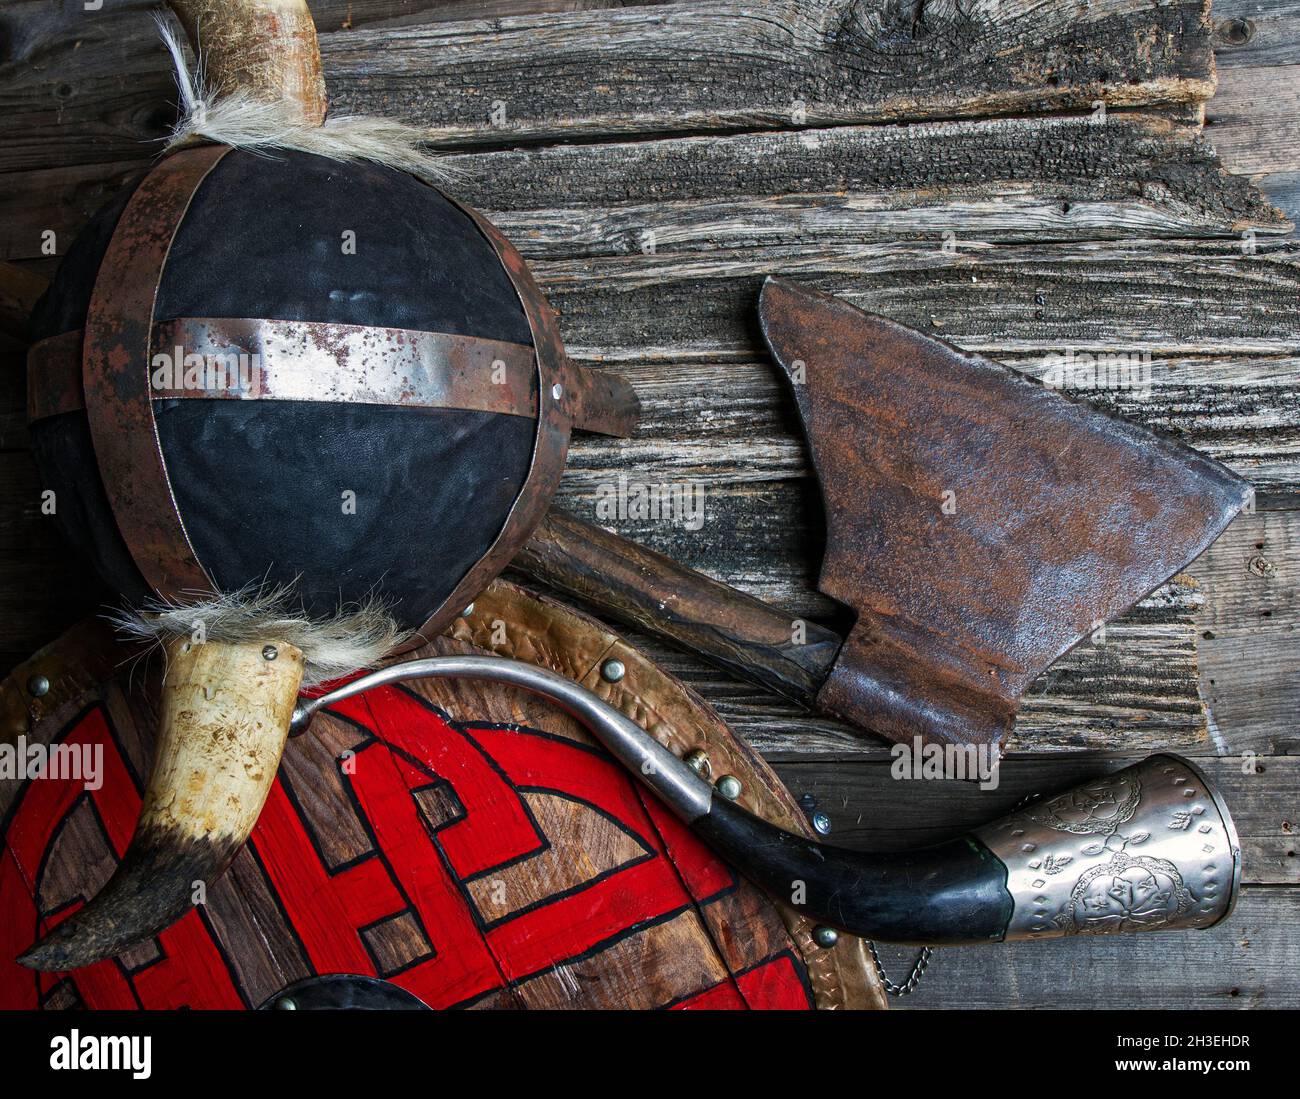 Kampf Axt gehörnten Helm Signalhorn und Schild mit viking Runen auf rauen Holztisch Draufsicht bedeckt Stockfoto